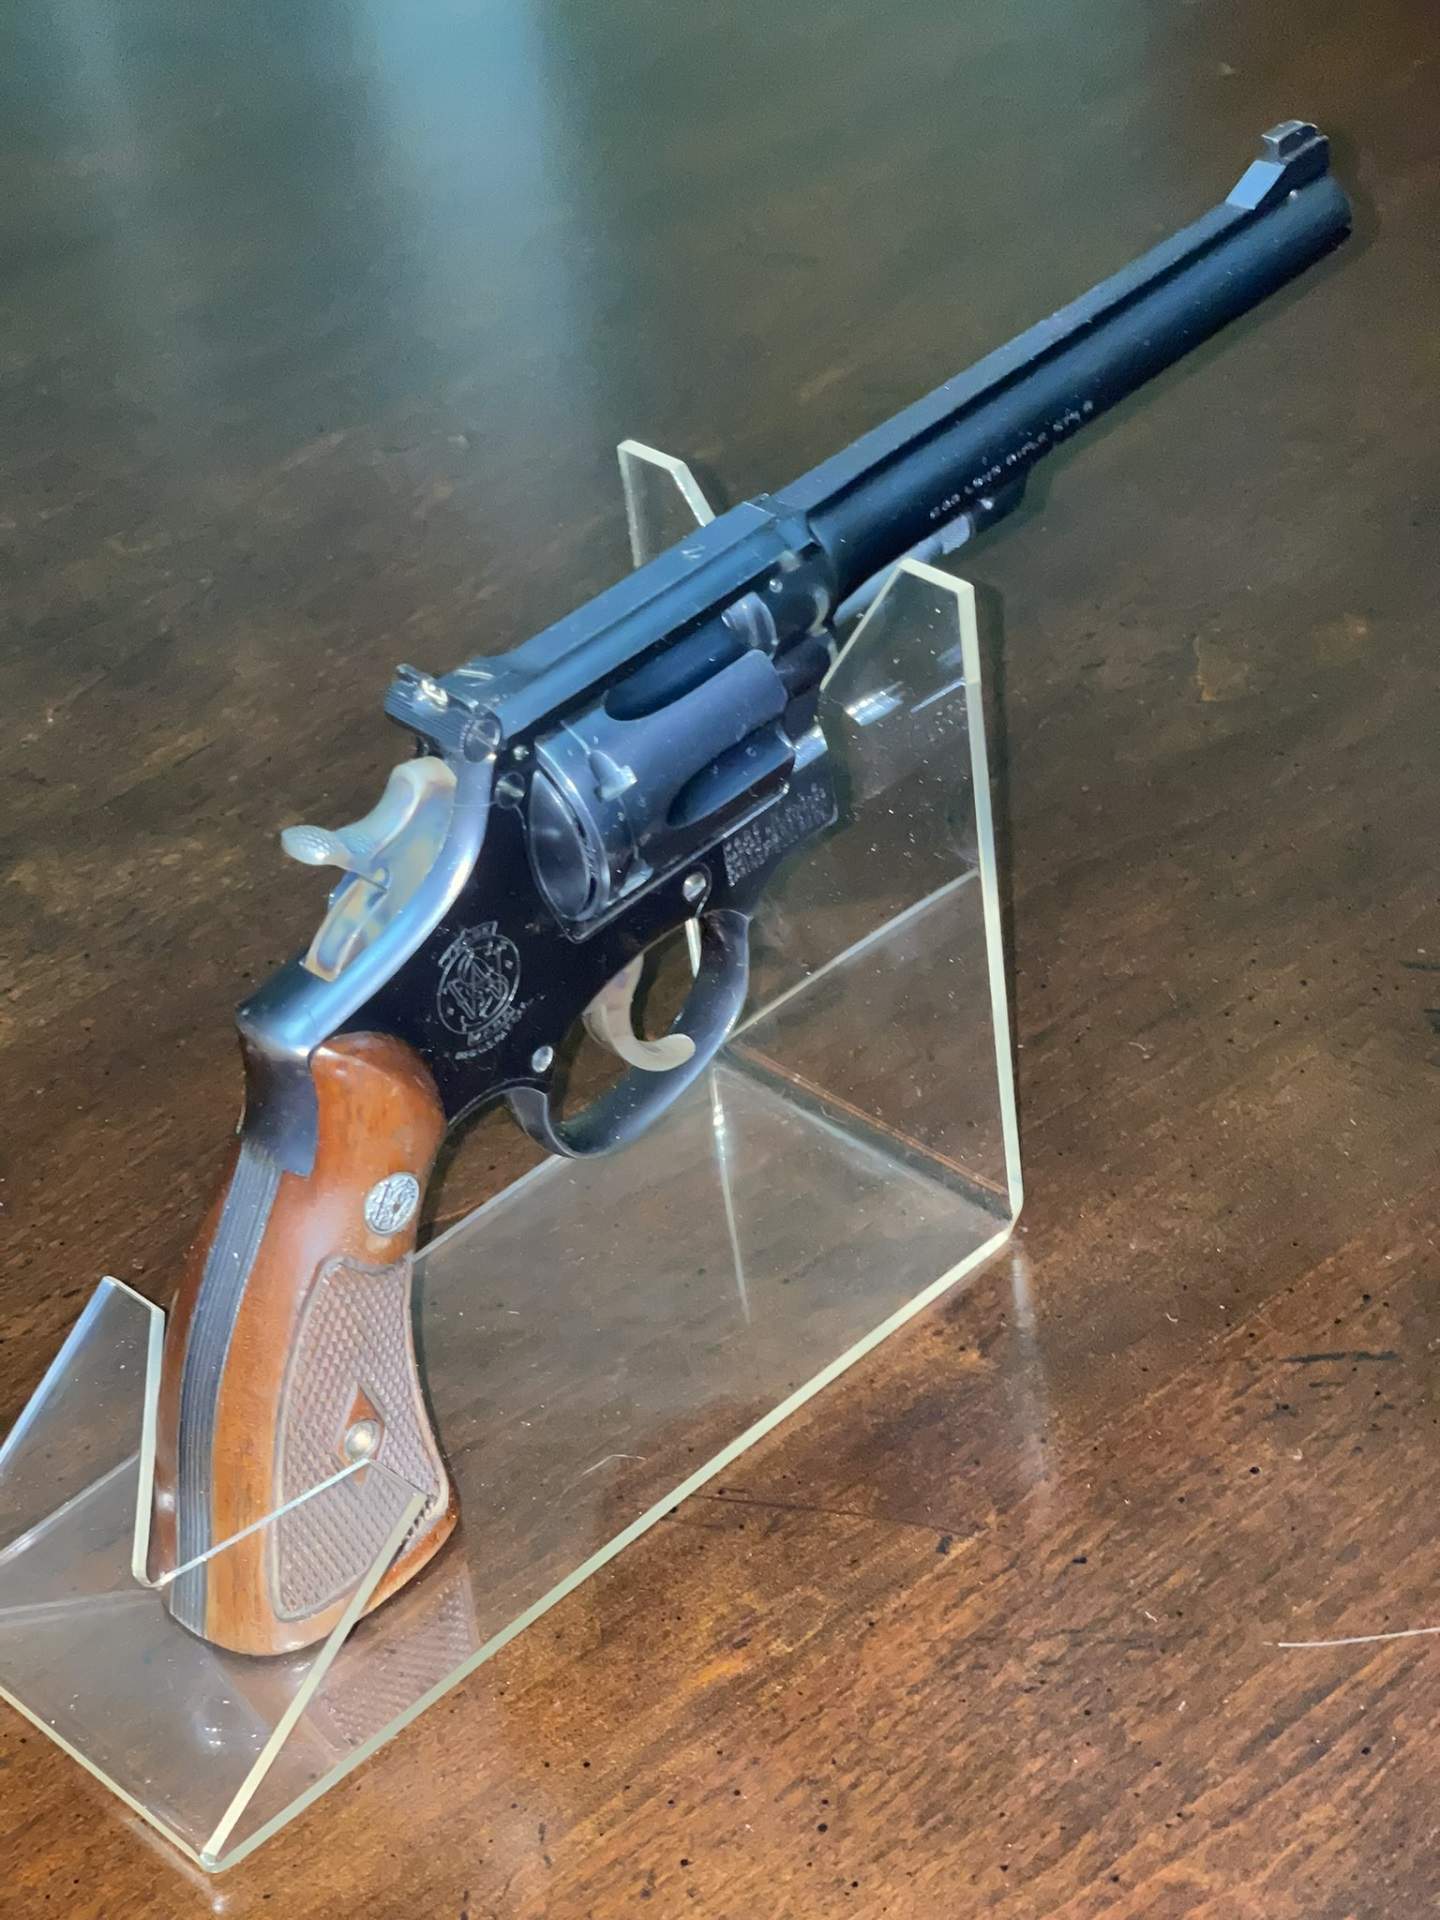 1953 Smith & Wesson K-22 Masterpiece 5-Screw